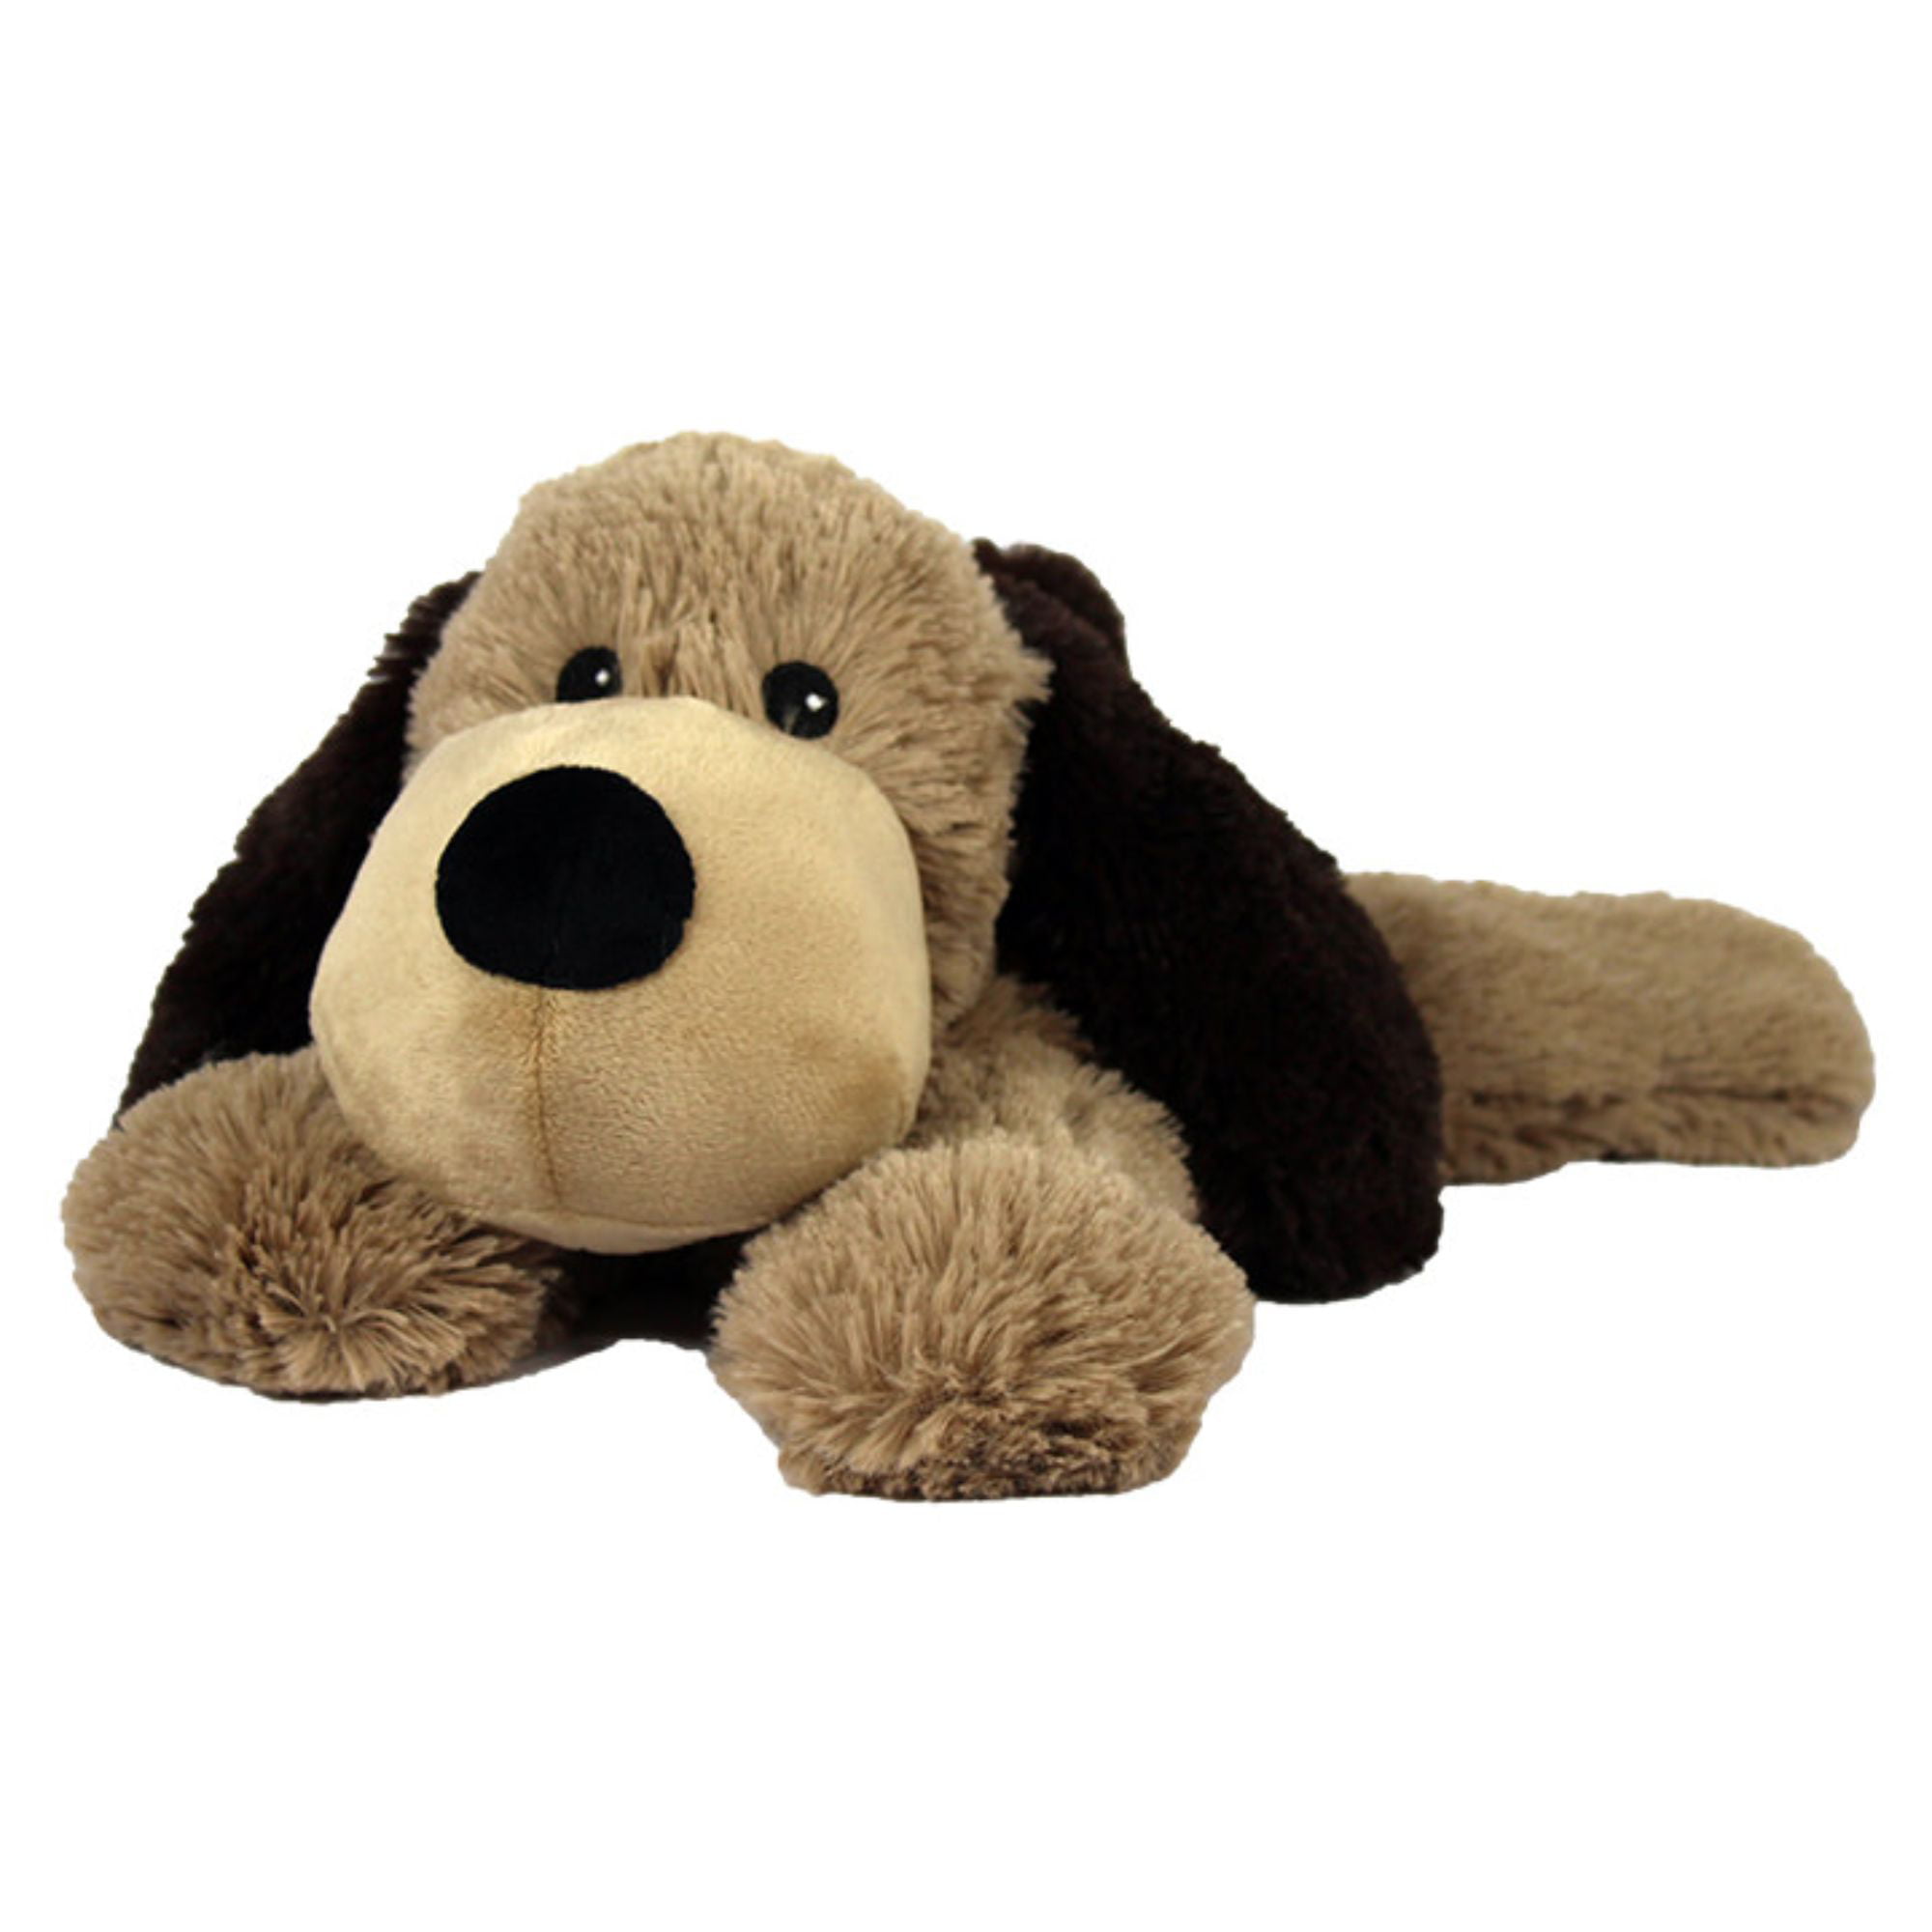 13" Black and Brown Microwavable Plush Dog Stuffed Animal